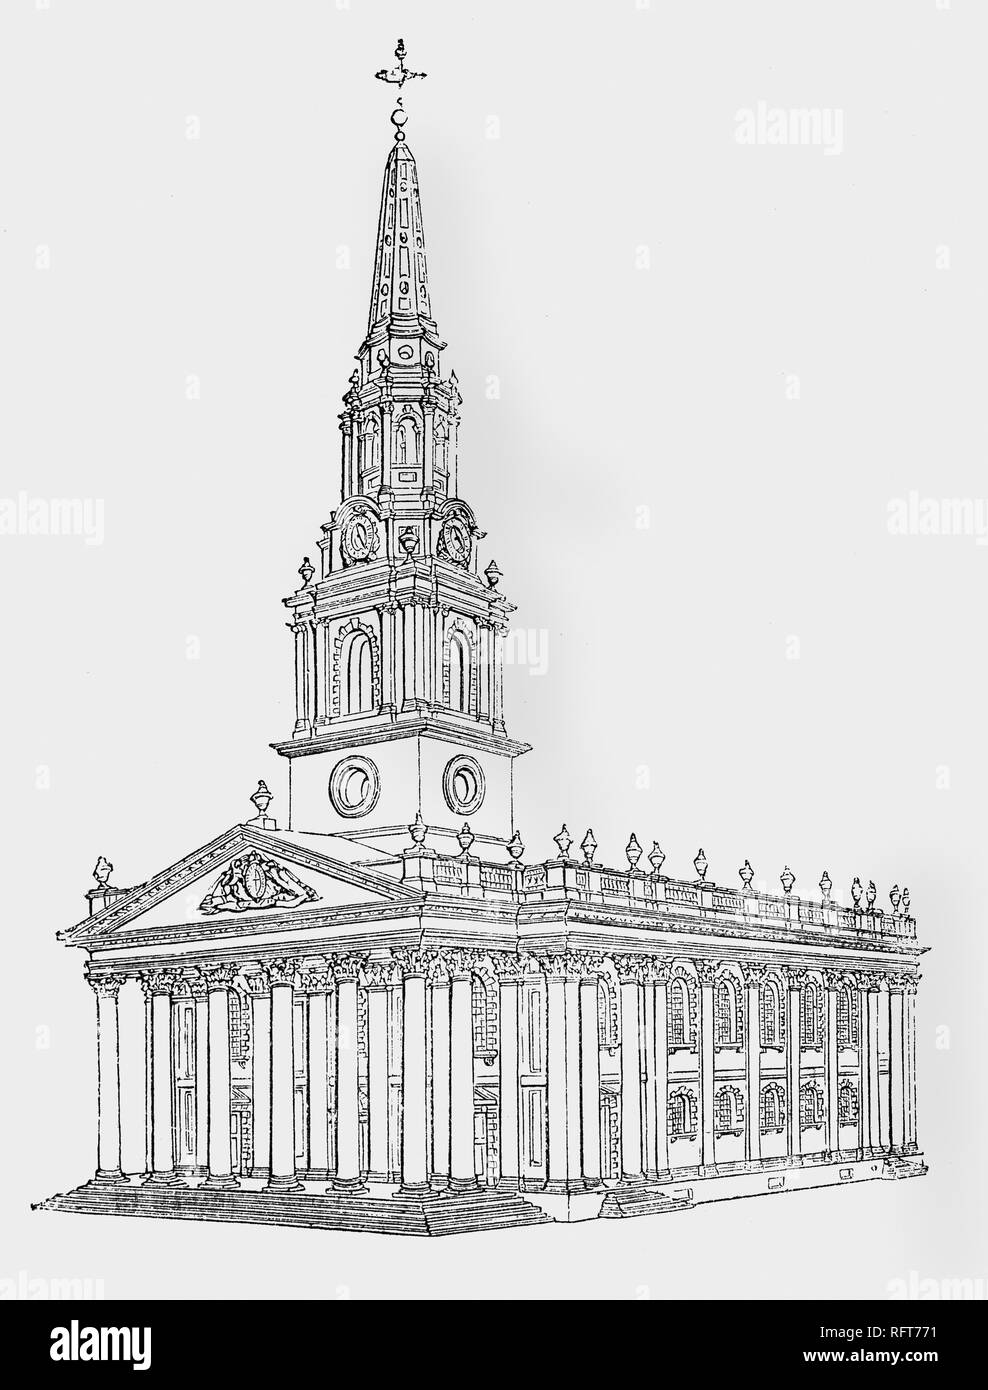 Church Architecture: Neoclassical Era – Churchgoers